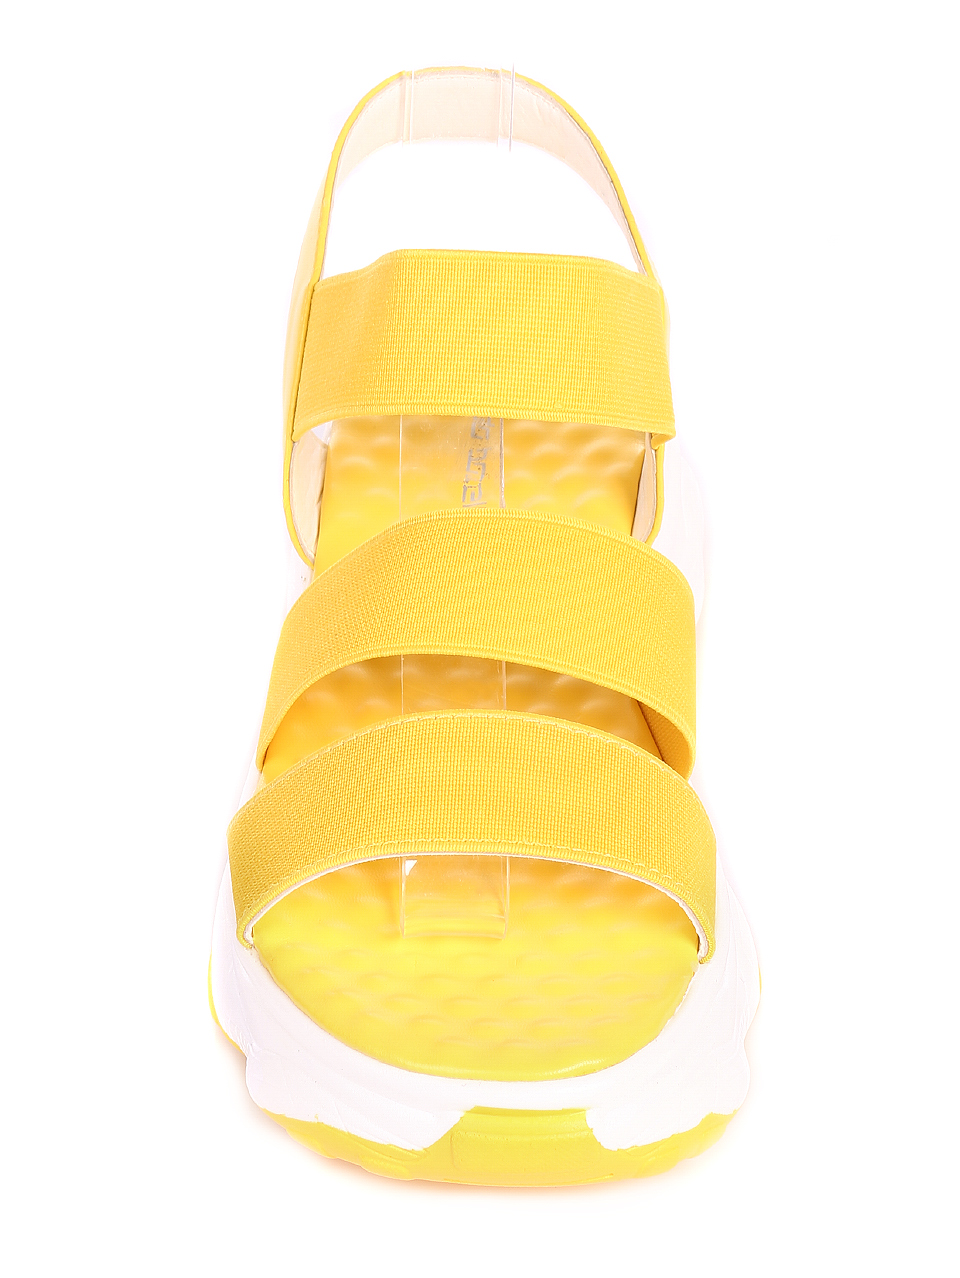 Ежедневни дамски сандали в жълто 4D-20263 yellow